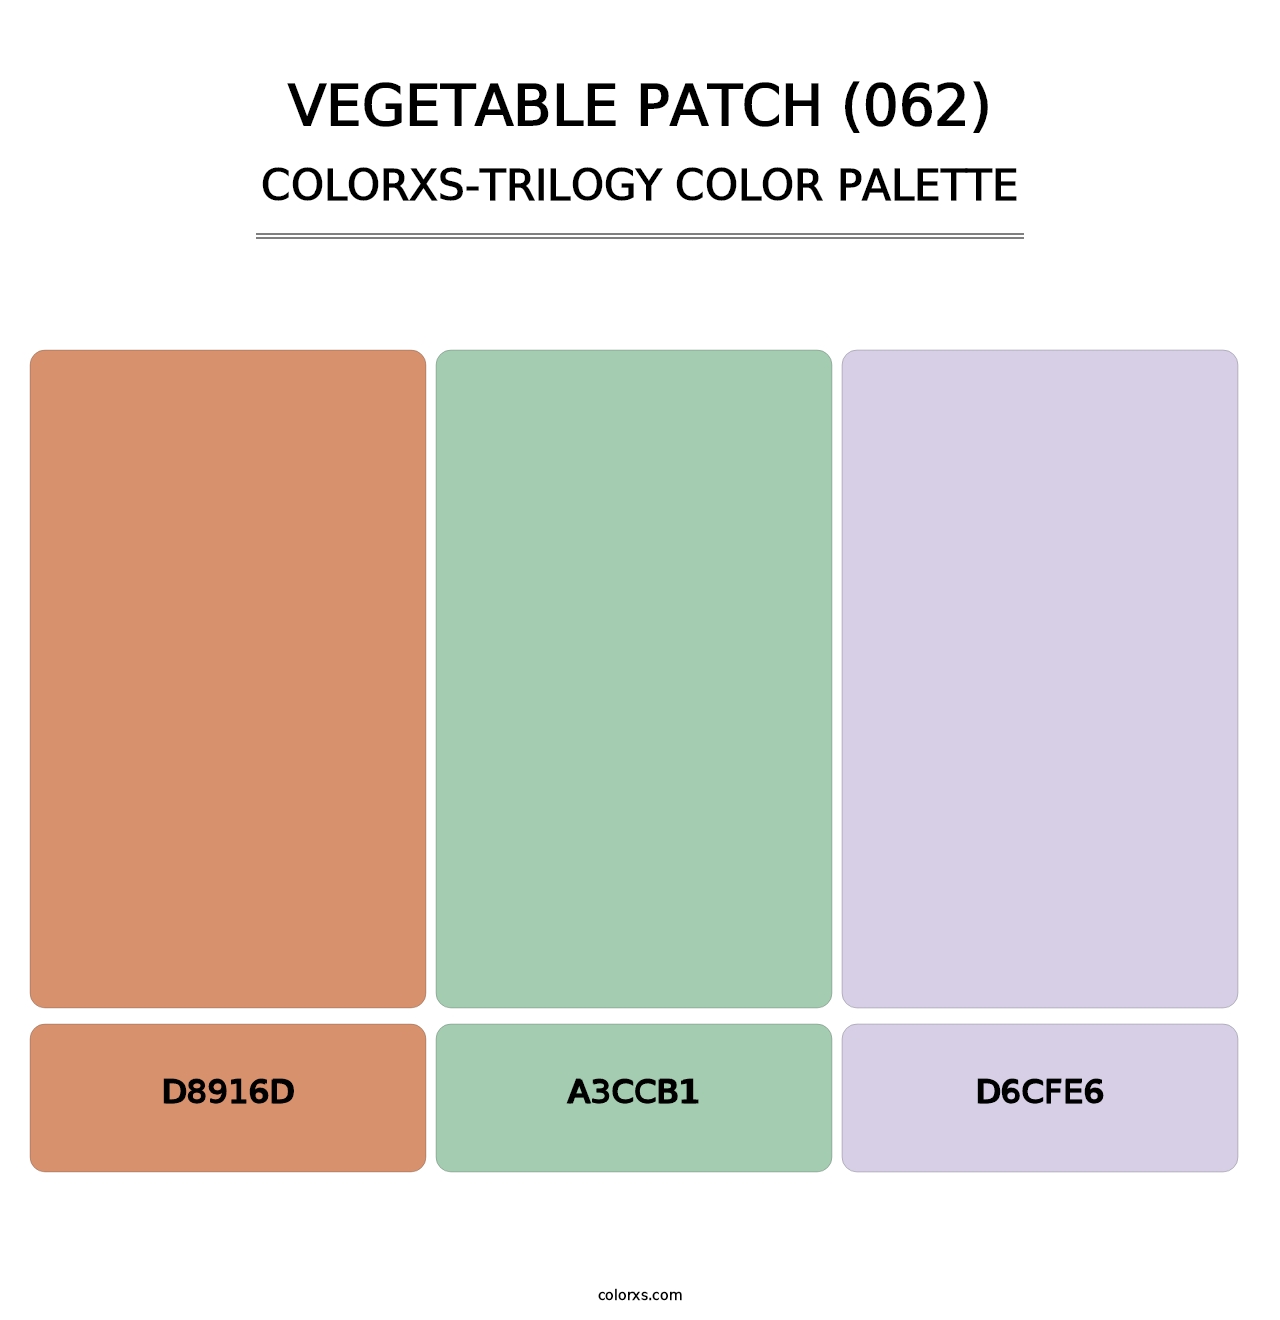 Vegetable Patch (062) - Colorxs Trilogy Palette